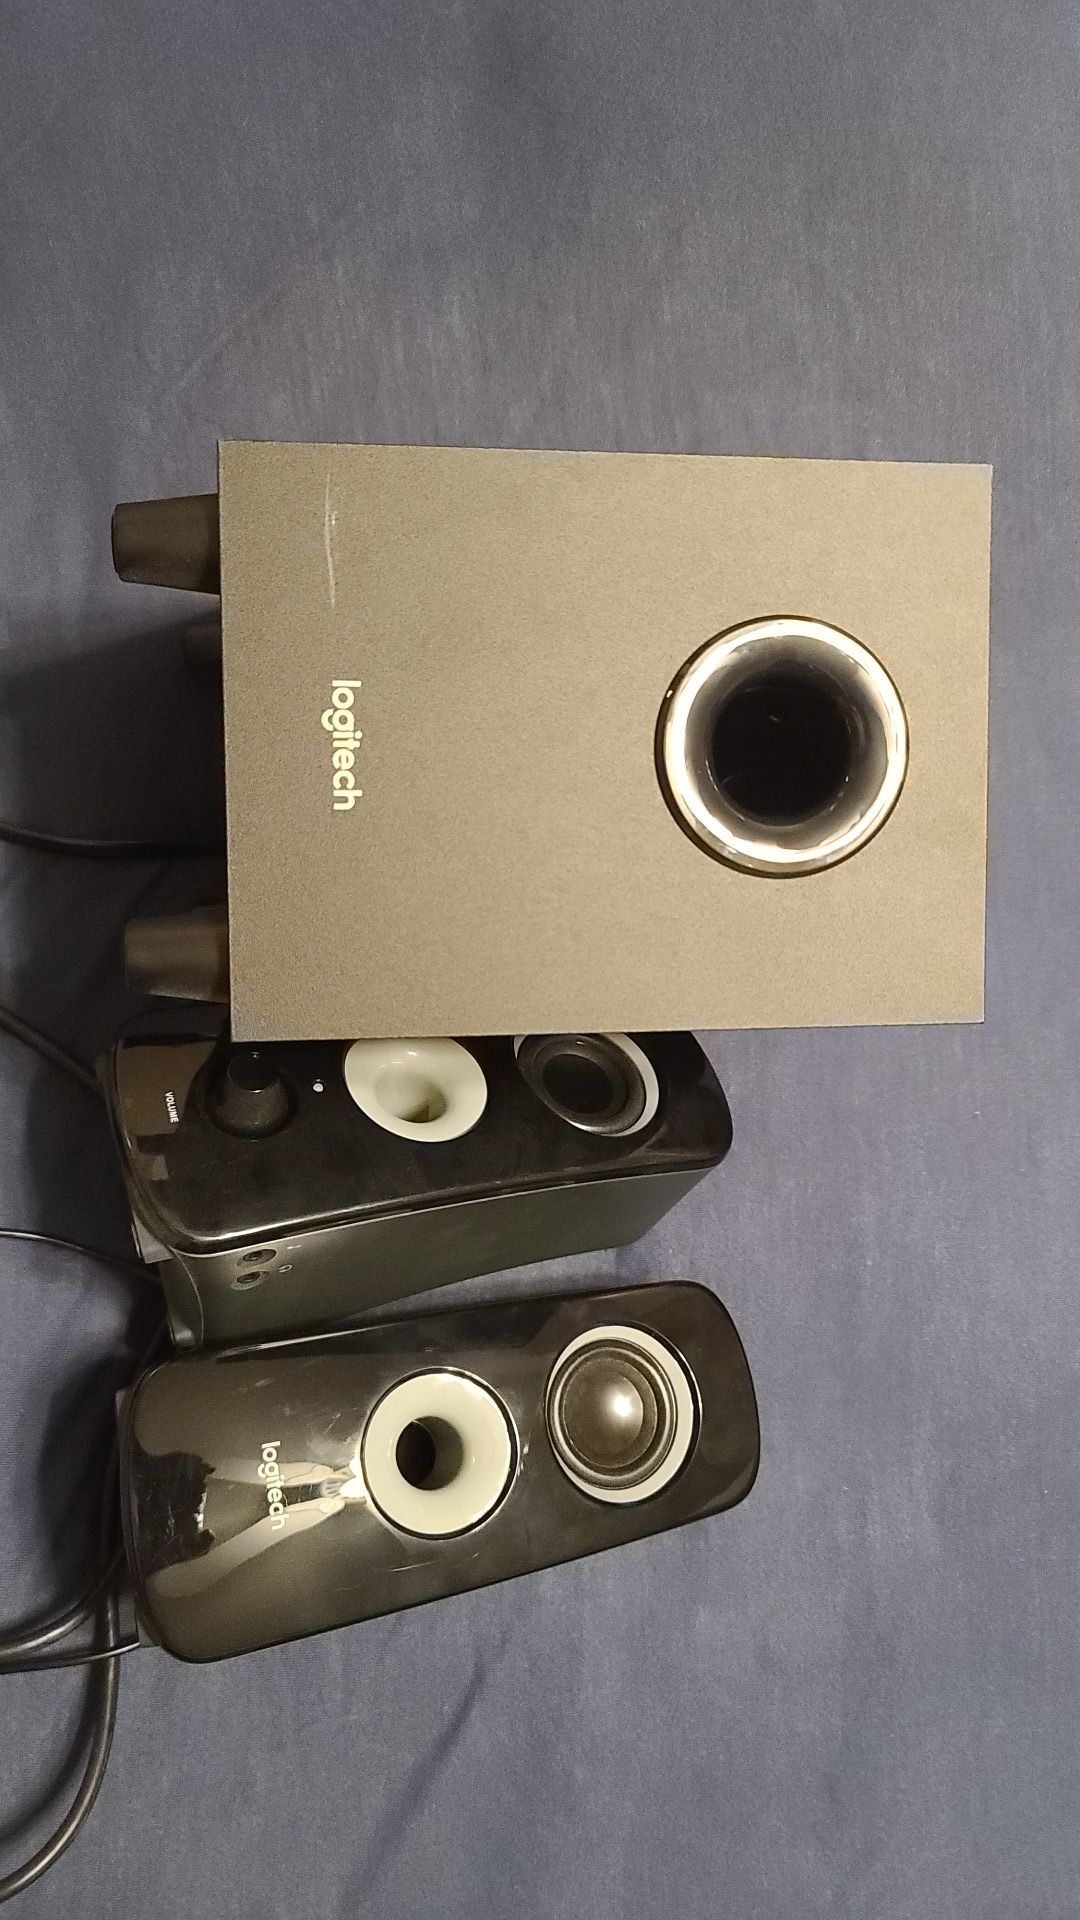 Logitech z323 speaker system